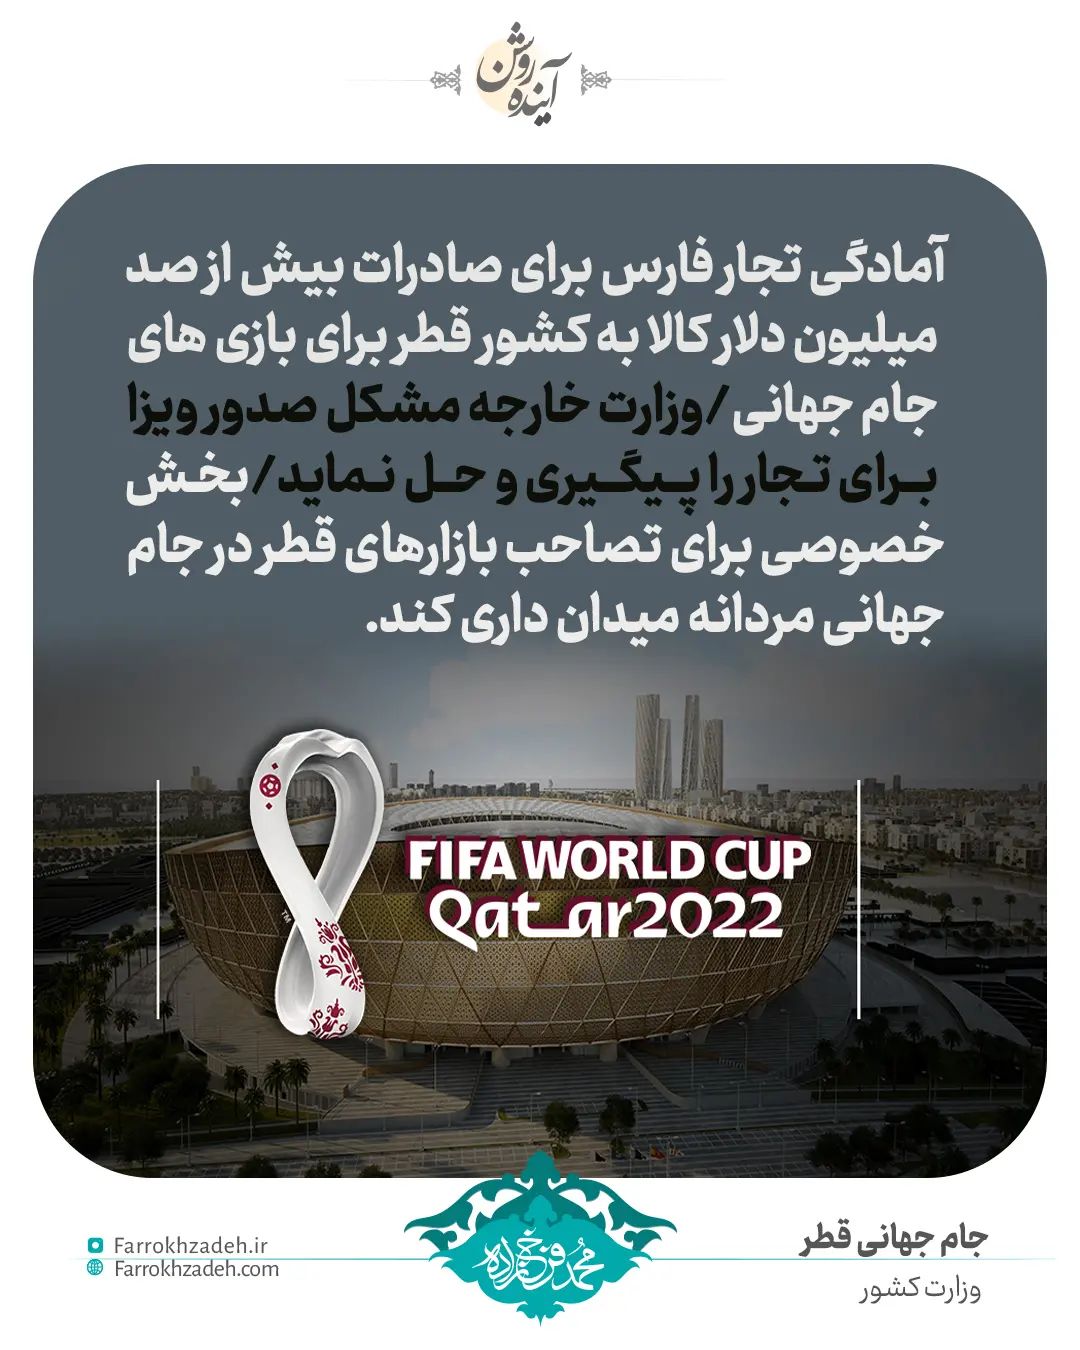 آمادگی تجار فارس برای صادرات بیش از صد میلیون دلار کالا به کشور قطر برای بازی های جام جهانی/وزارت خارجه مشکل صدور ویزا برای تجار را پیگیری و حل نماید/بخش خصوصی برای تصاحب بازارهای قطر مردانه میدان داری کند